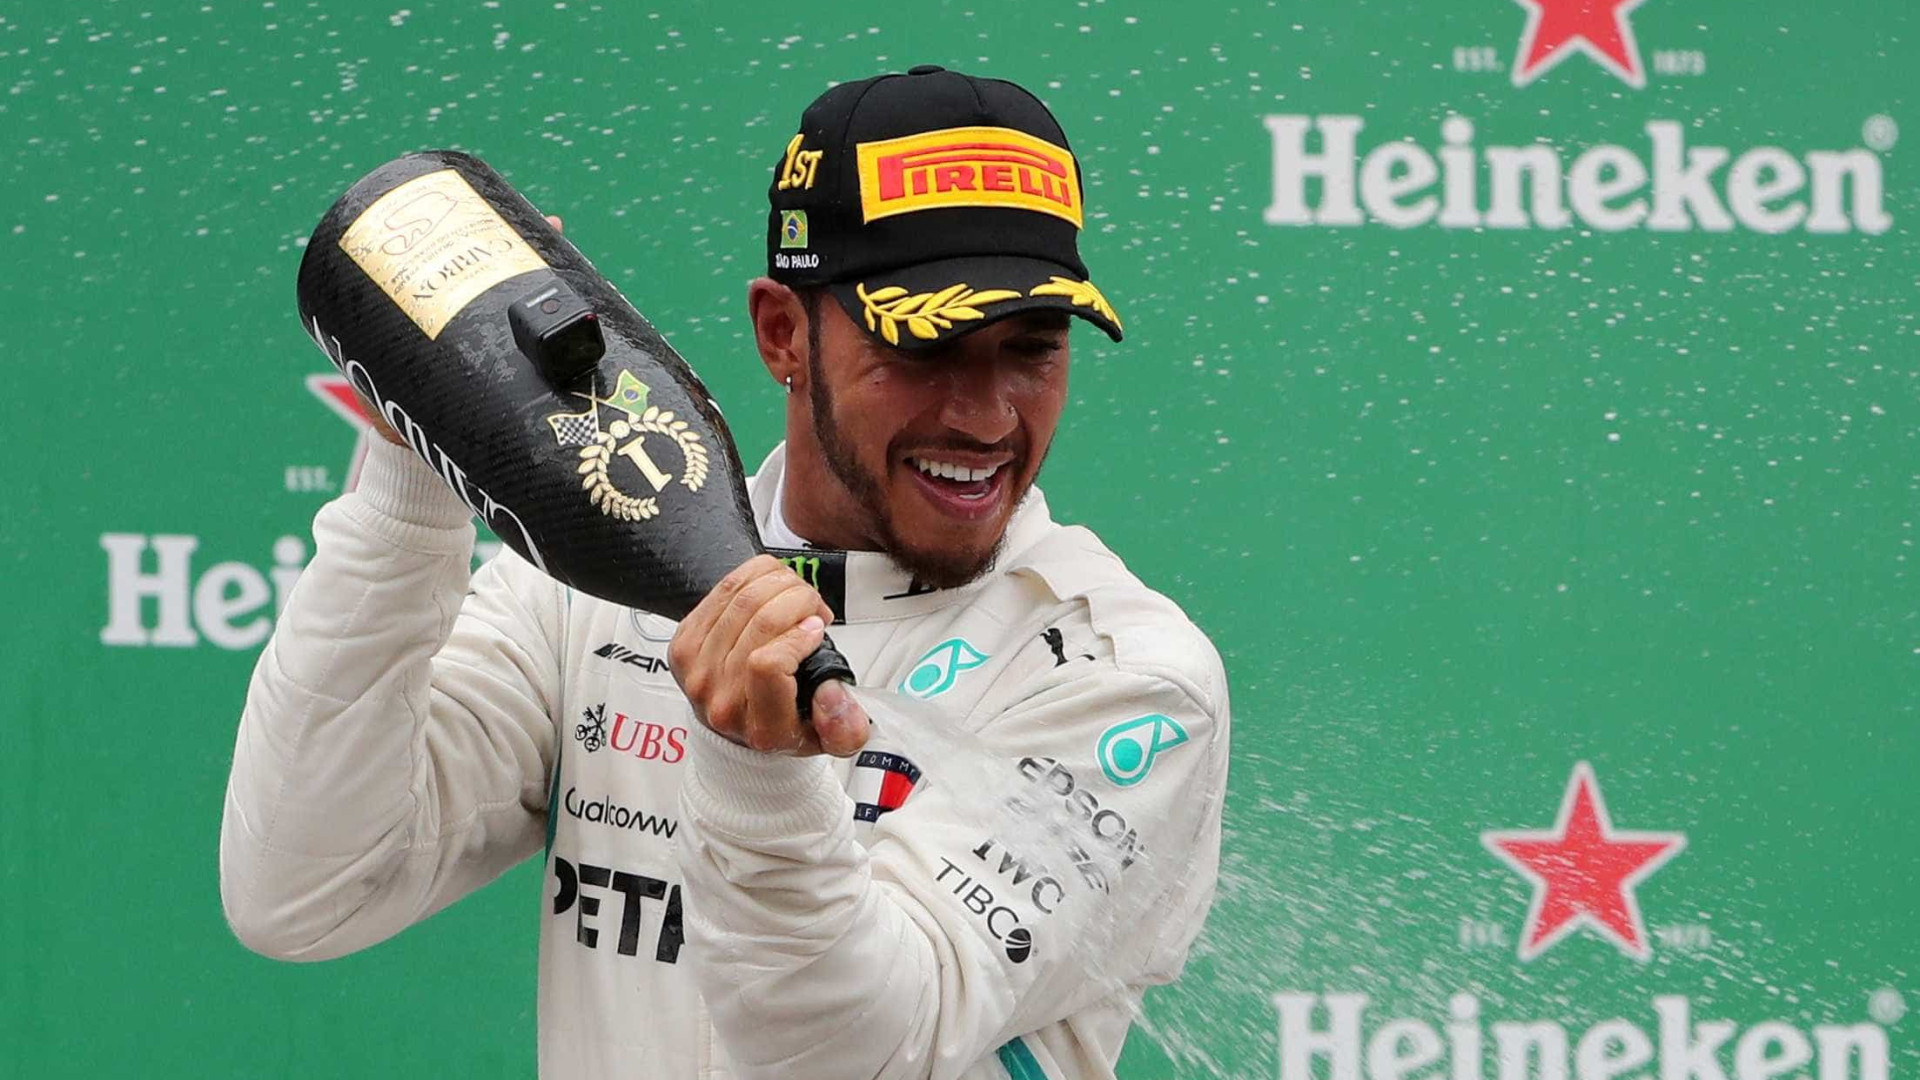 Soberano, Hamilton vence GP de Eifel e iguala recorde de vitórias de Schumacher